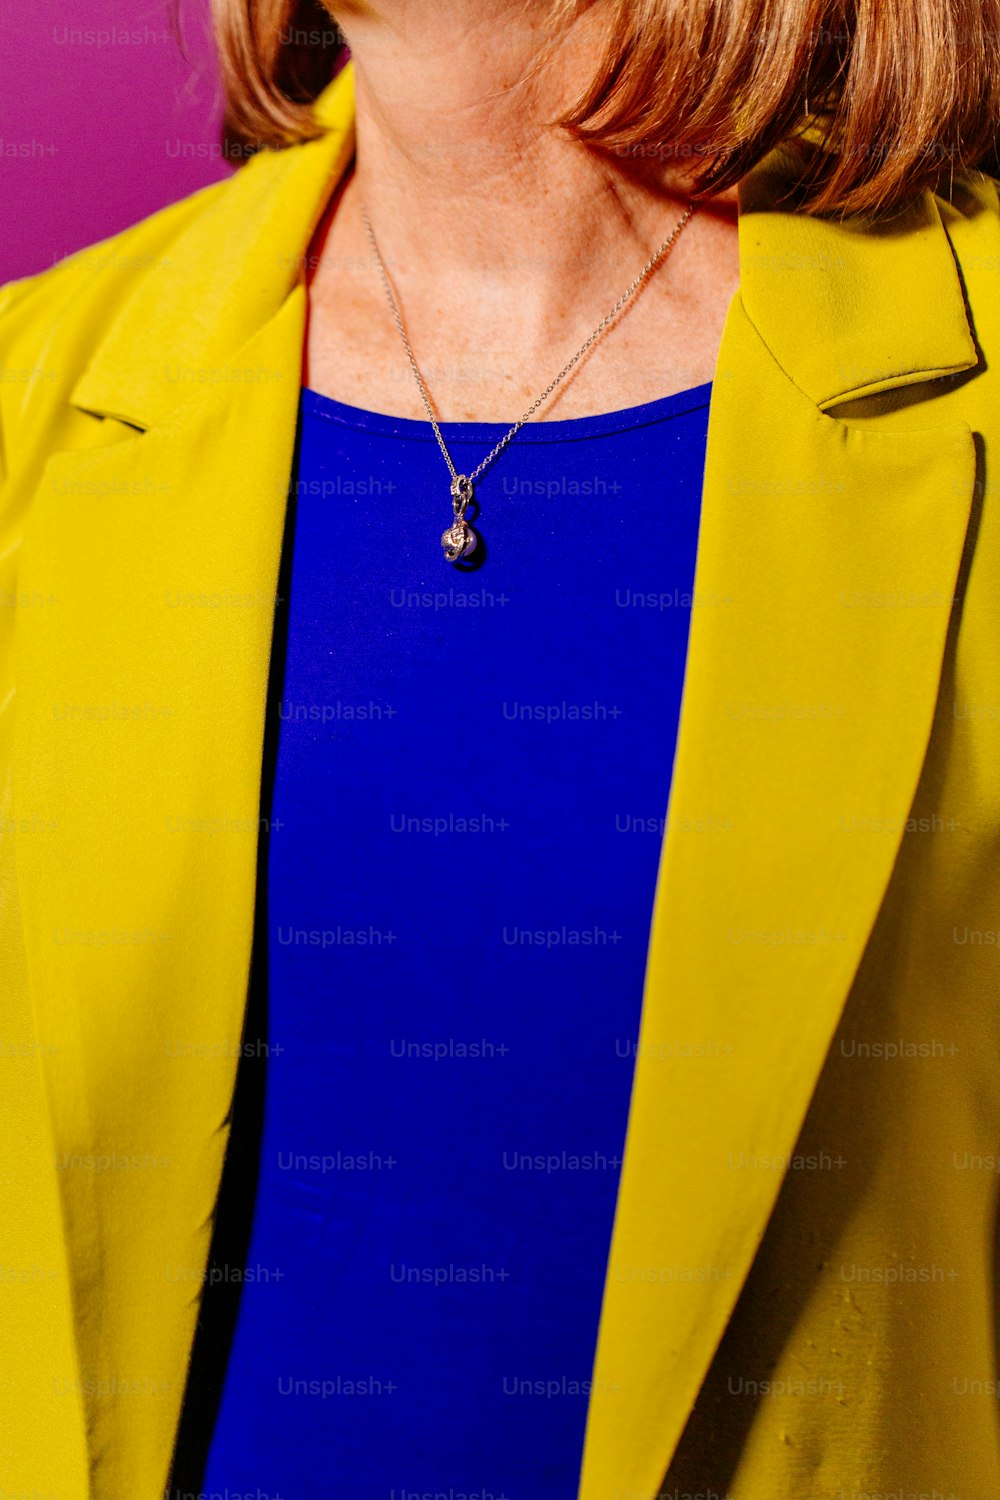 노란색 재킷과 파란색 상의를 입은 여자